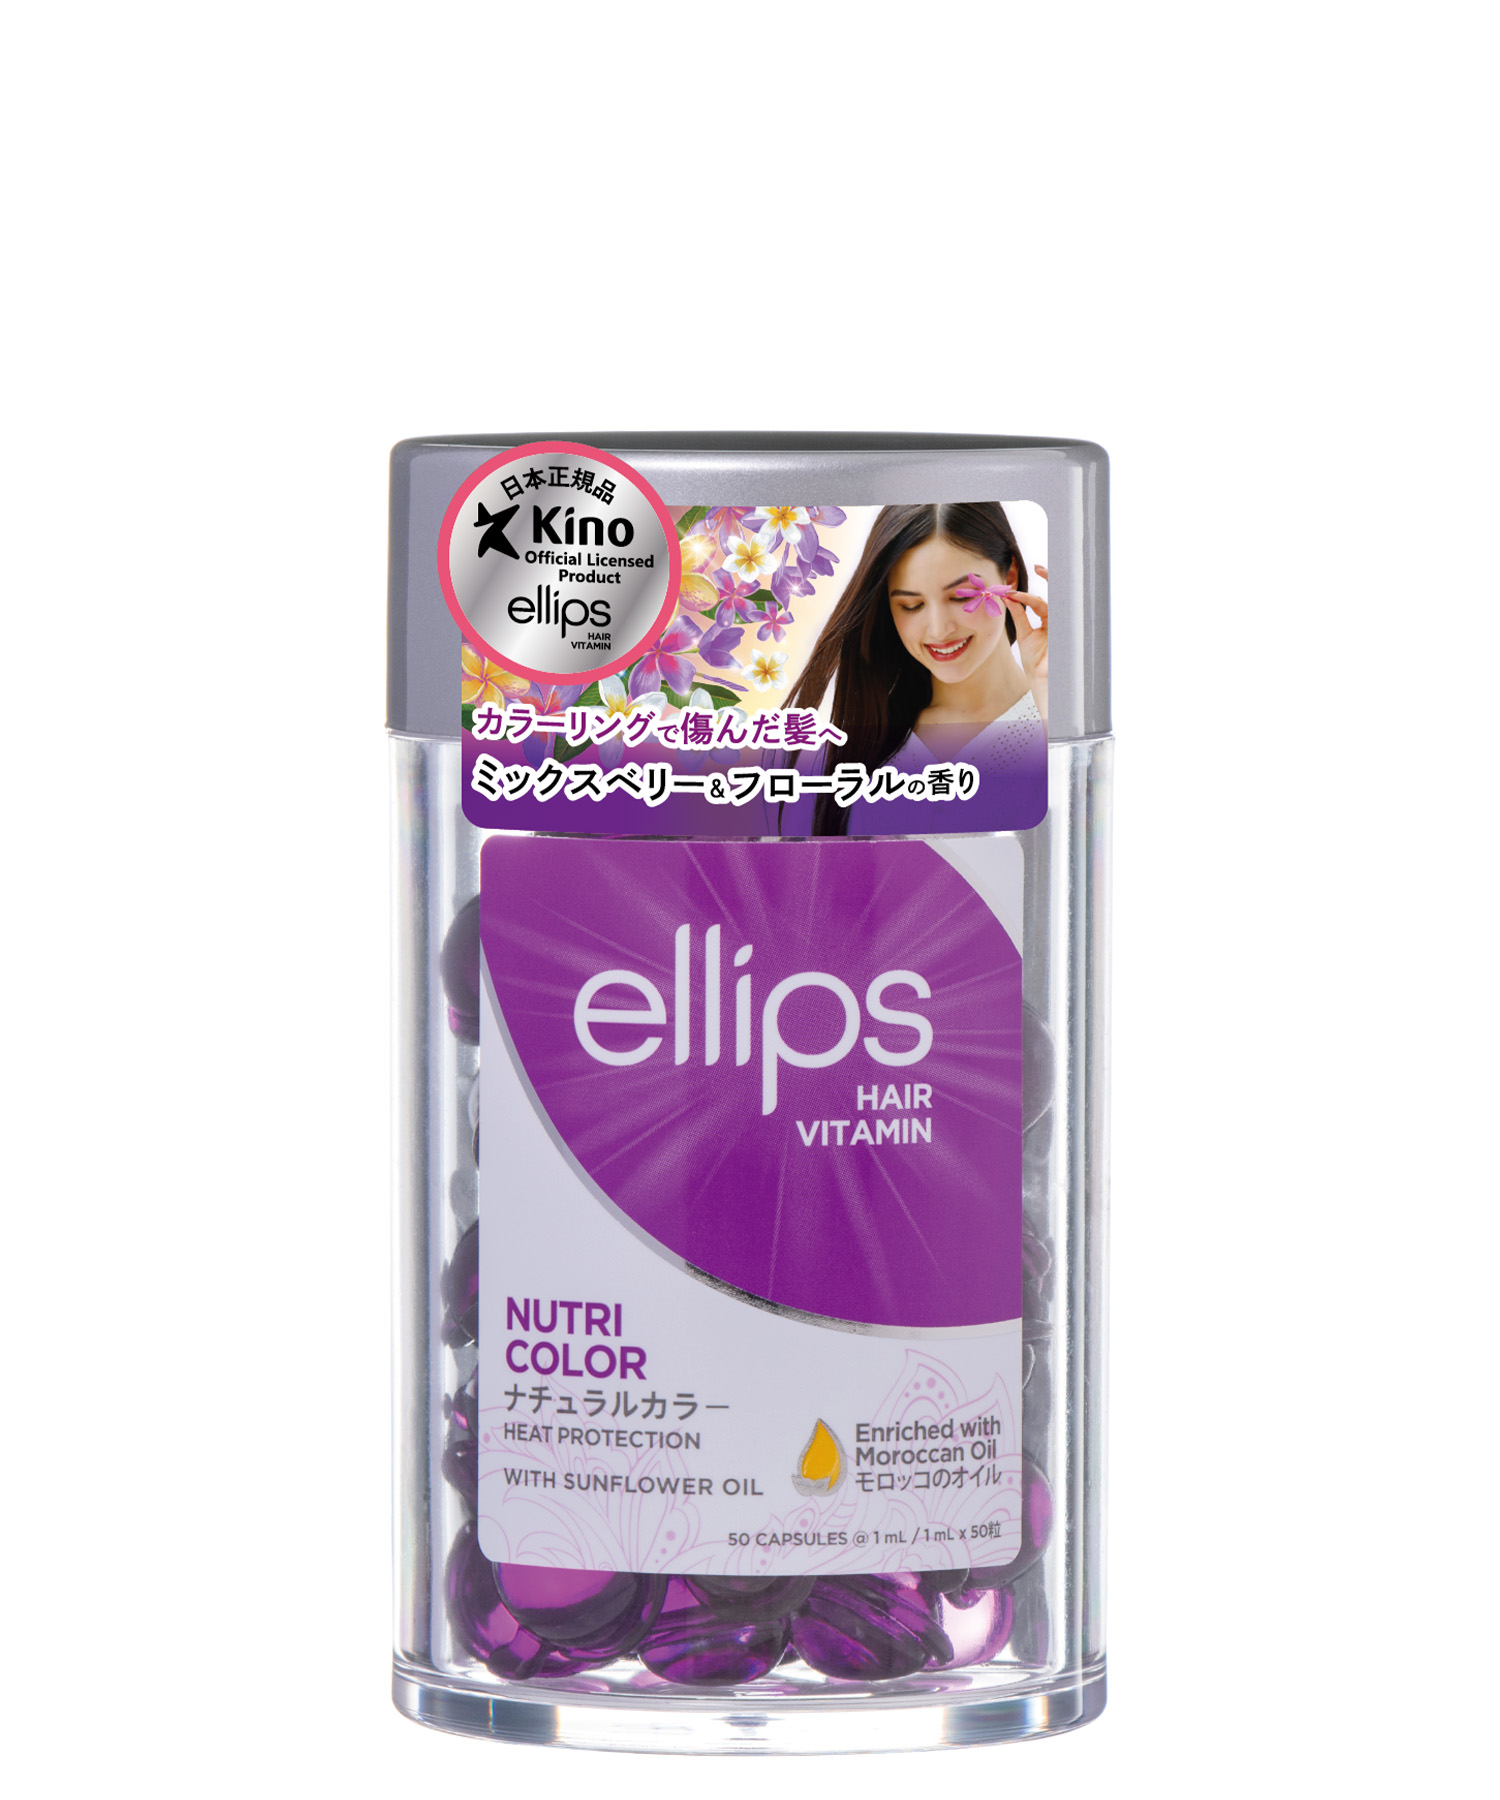 ellips/エリップス ヘアオイル ナチュラルカラー(ミックスベリー＆フローラルの香り)50粒入